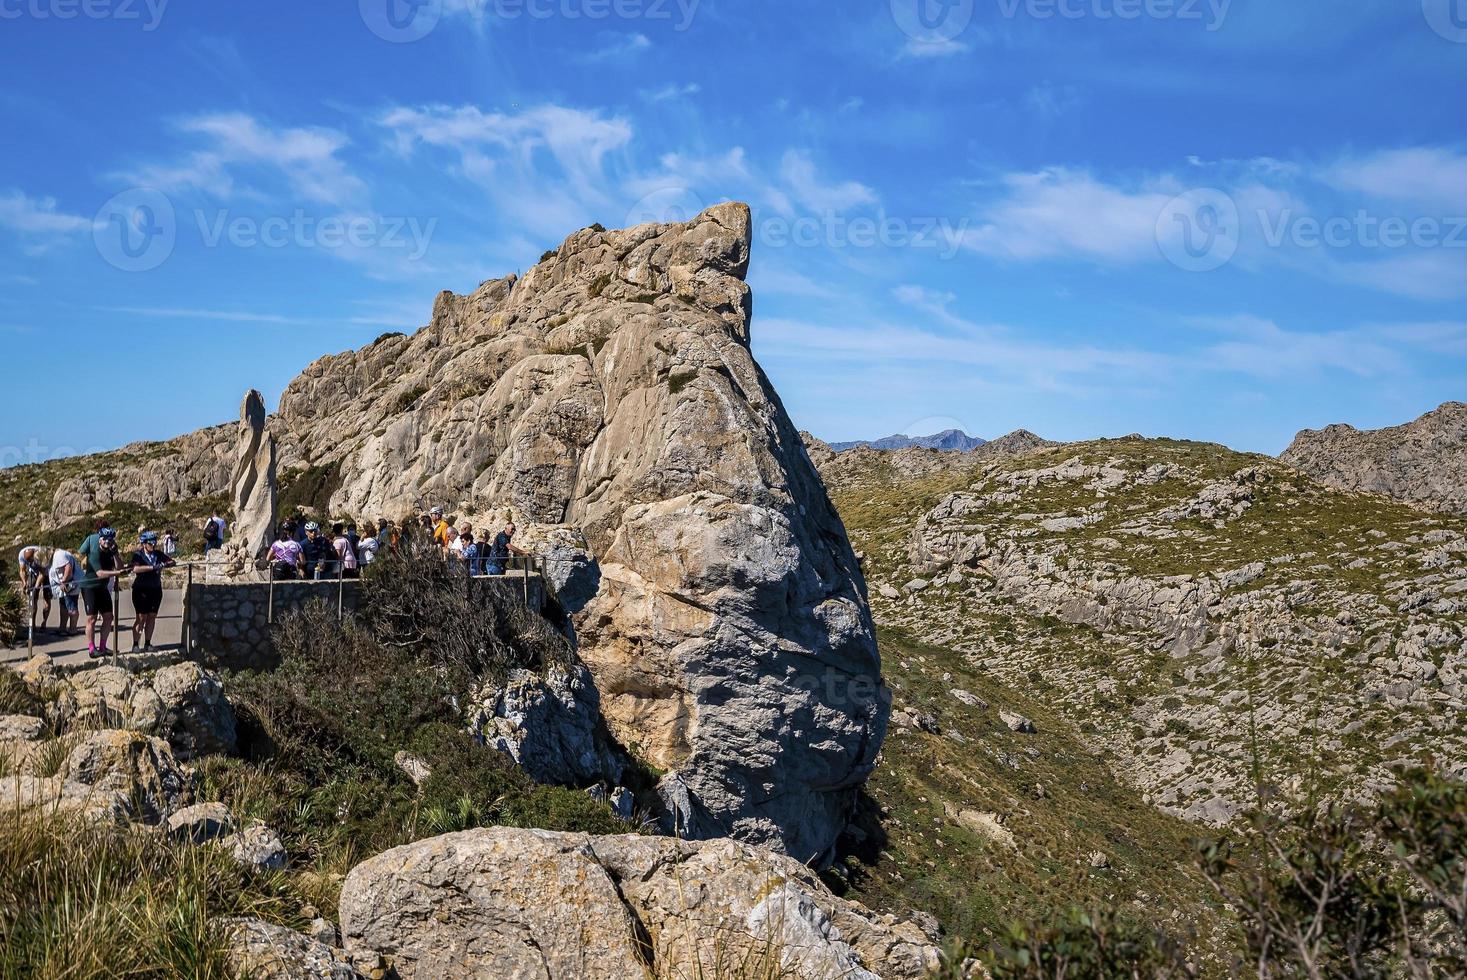 touristes explorant les falaises rocheuses contre le ciel bleu pendant les vacances d'été photo